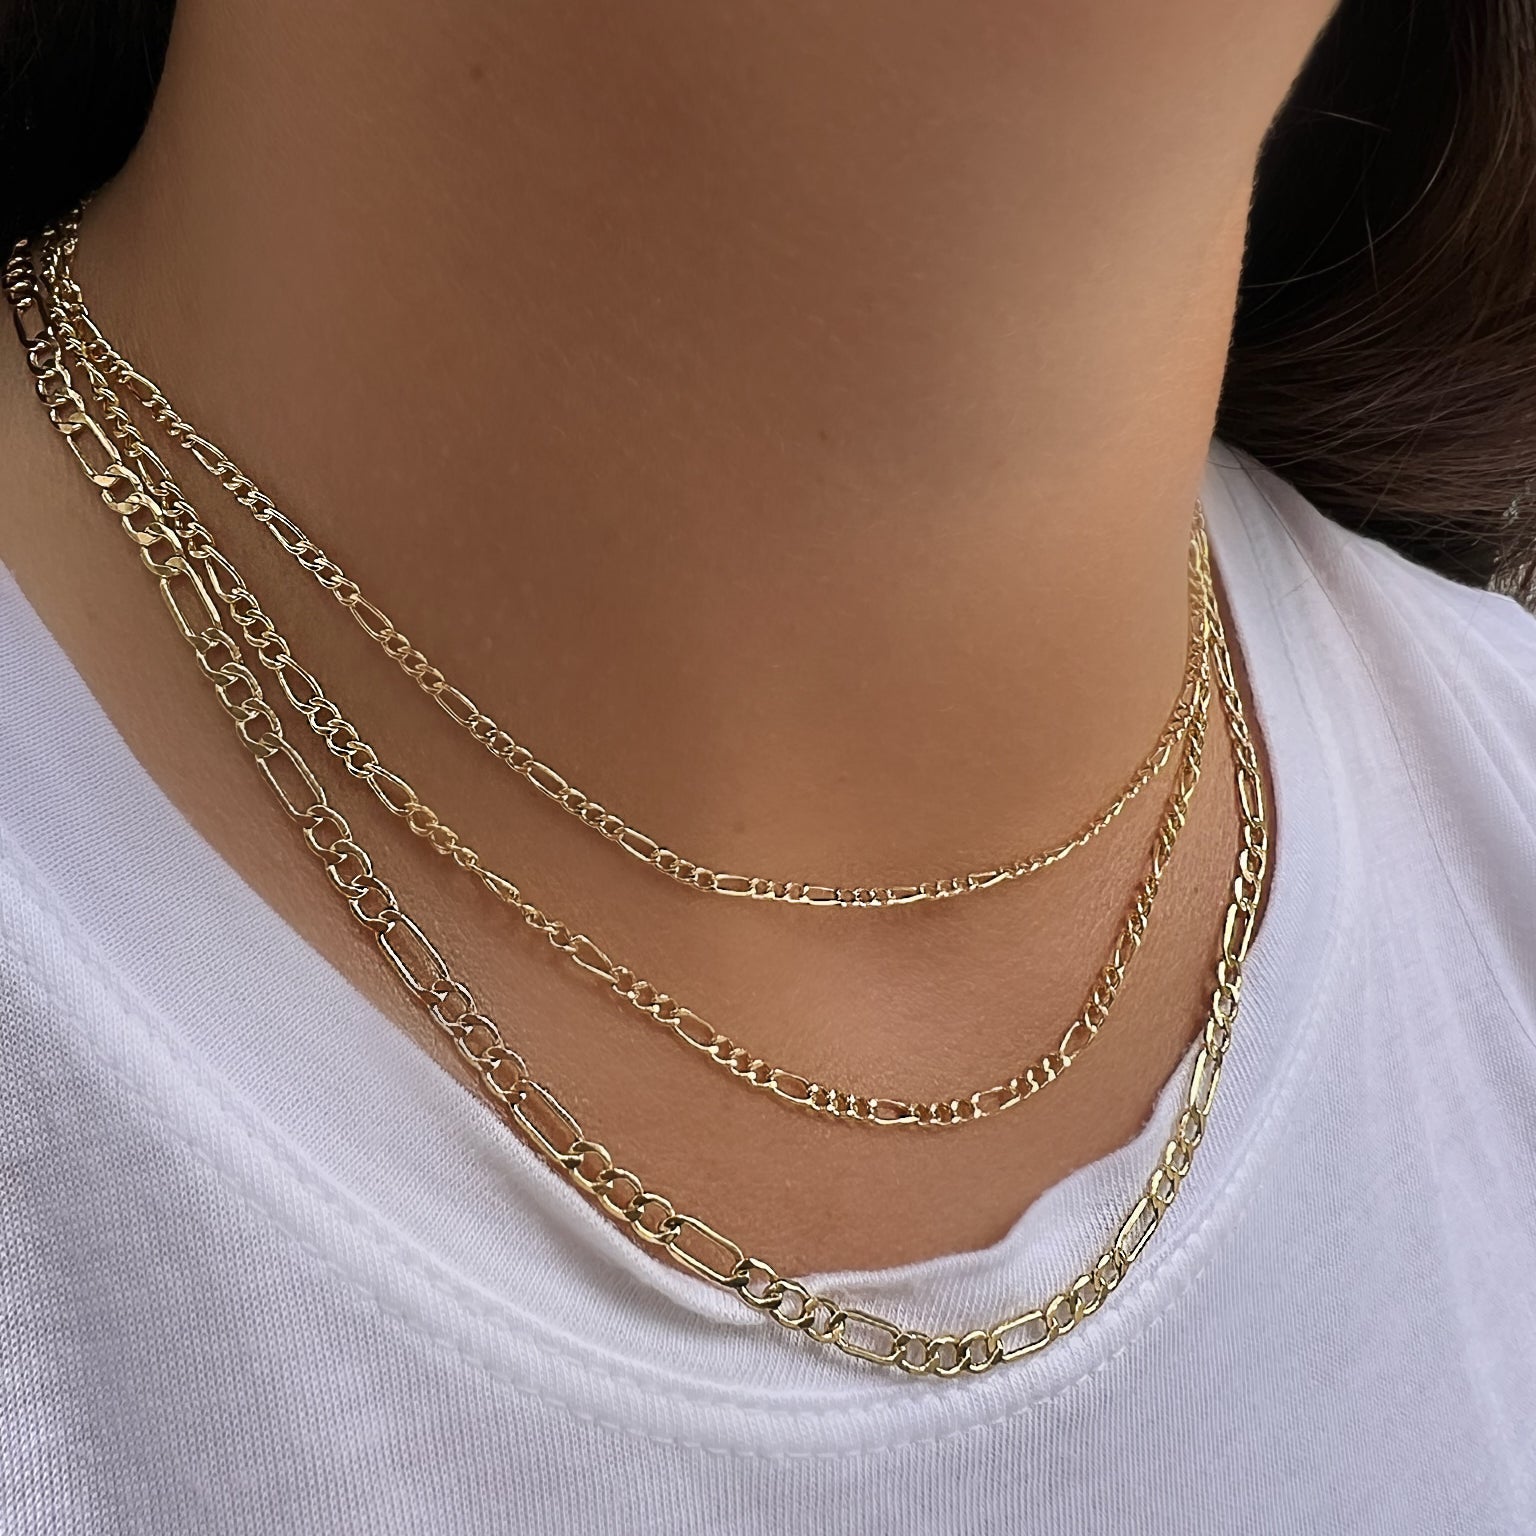 14K Gold Figaro Chain Necklace Yellow Gold Necklaces by Izakov Diamonds + Fine Jewelry | Izakov